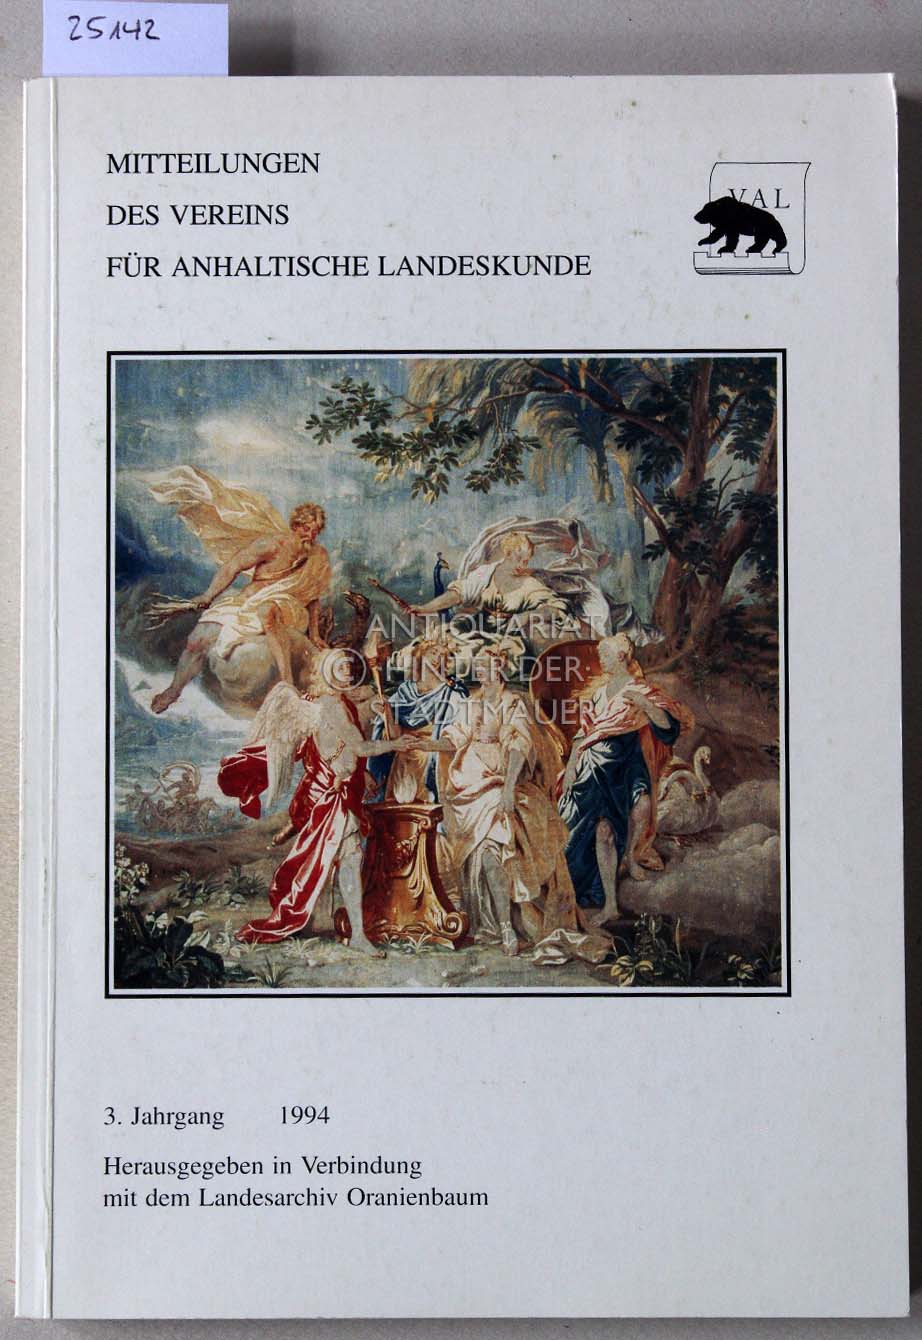 Mitteilungen des Vereins für anhaltische Landeskunde. 3. Jahrgang 1994.